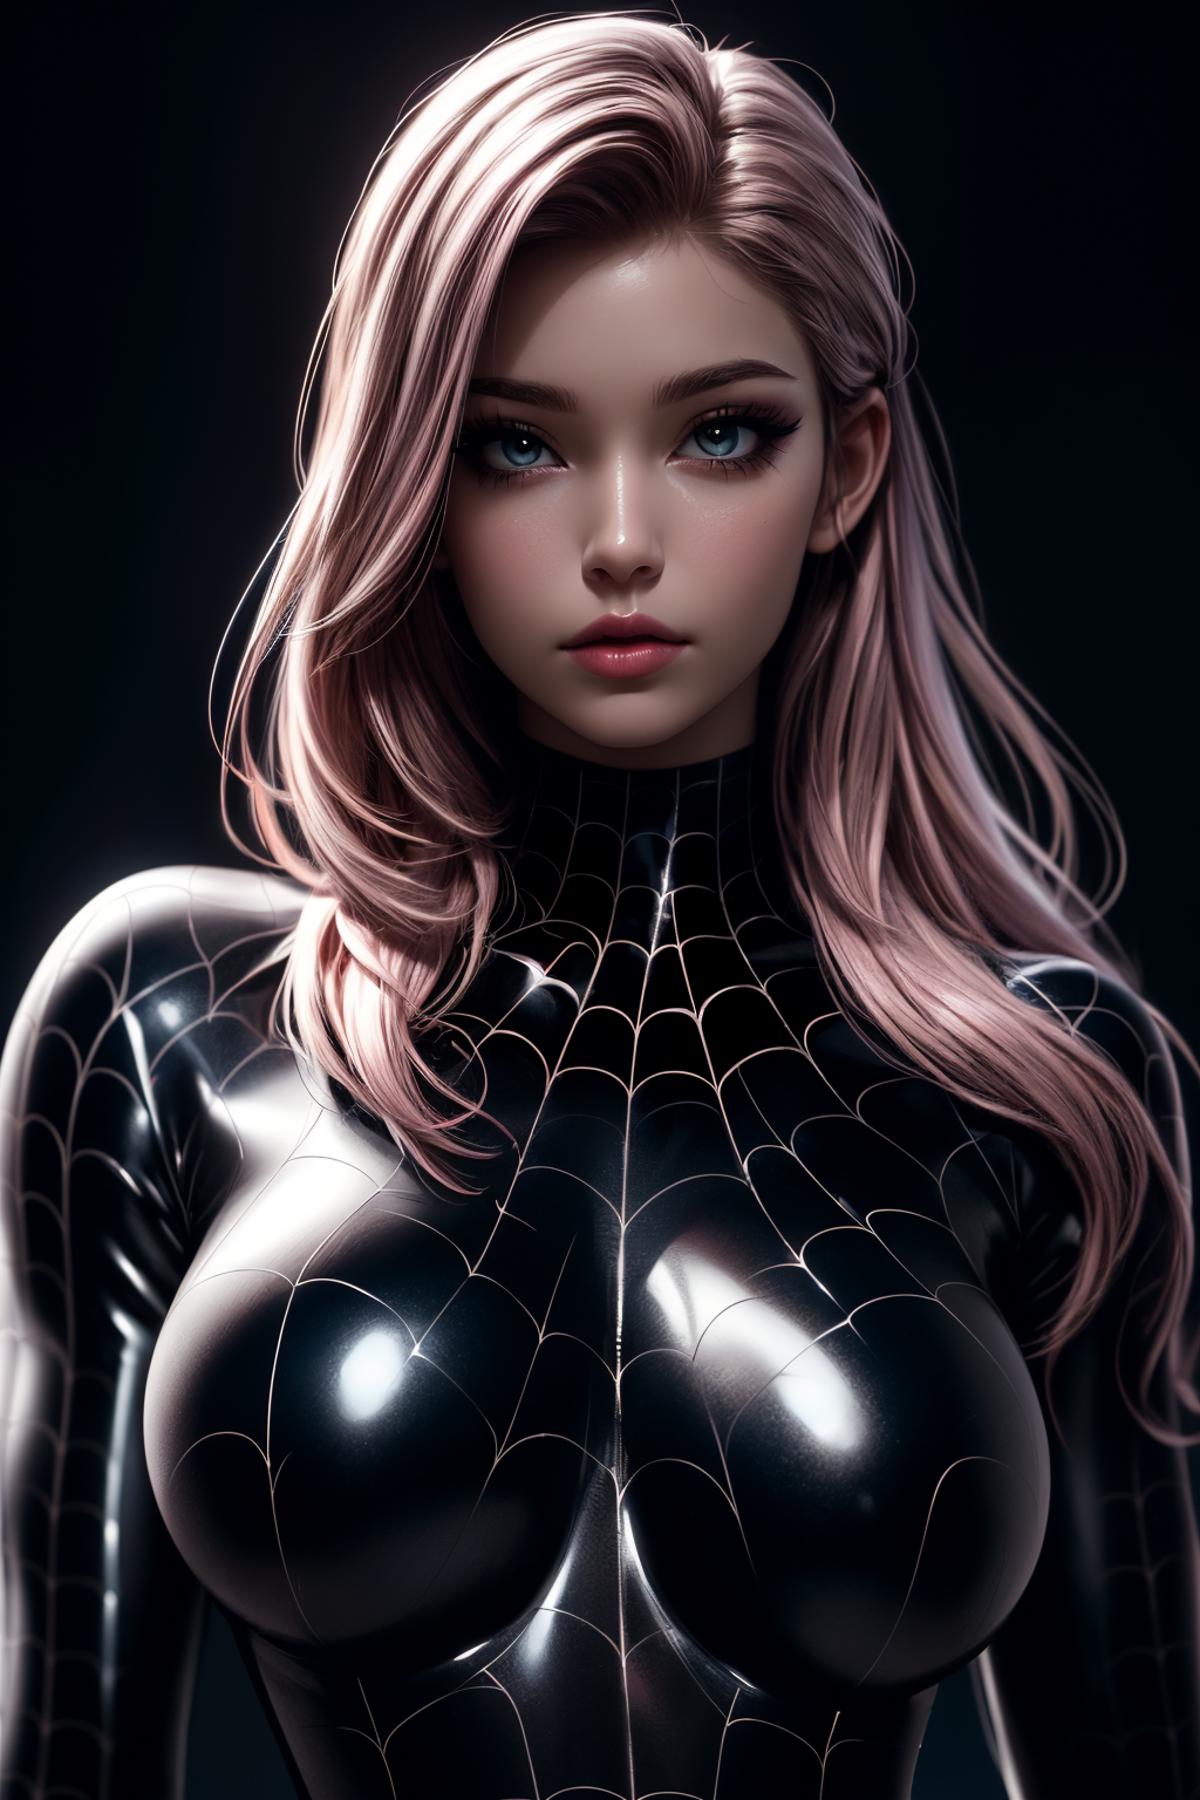 绪儿-蜘蛛侠服装Spider-man costume image by iJWiTGS8